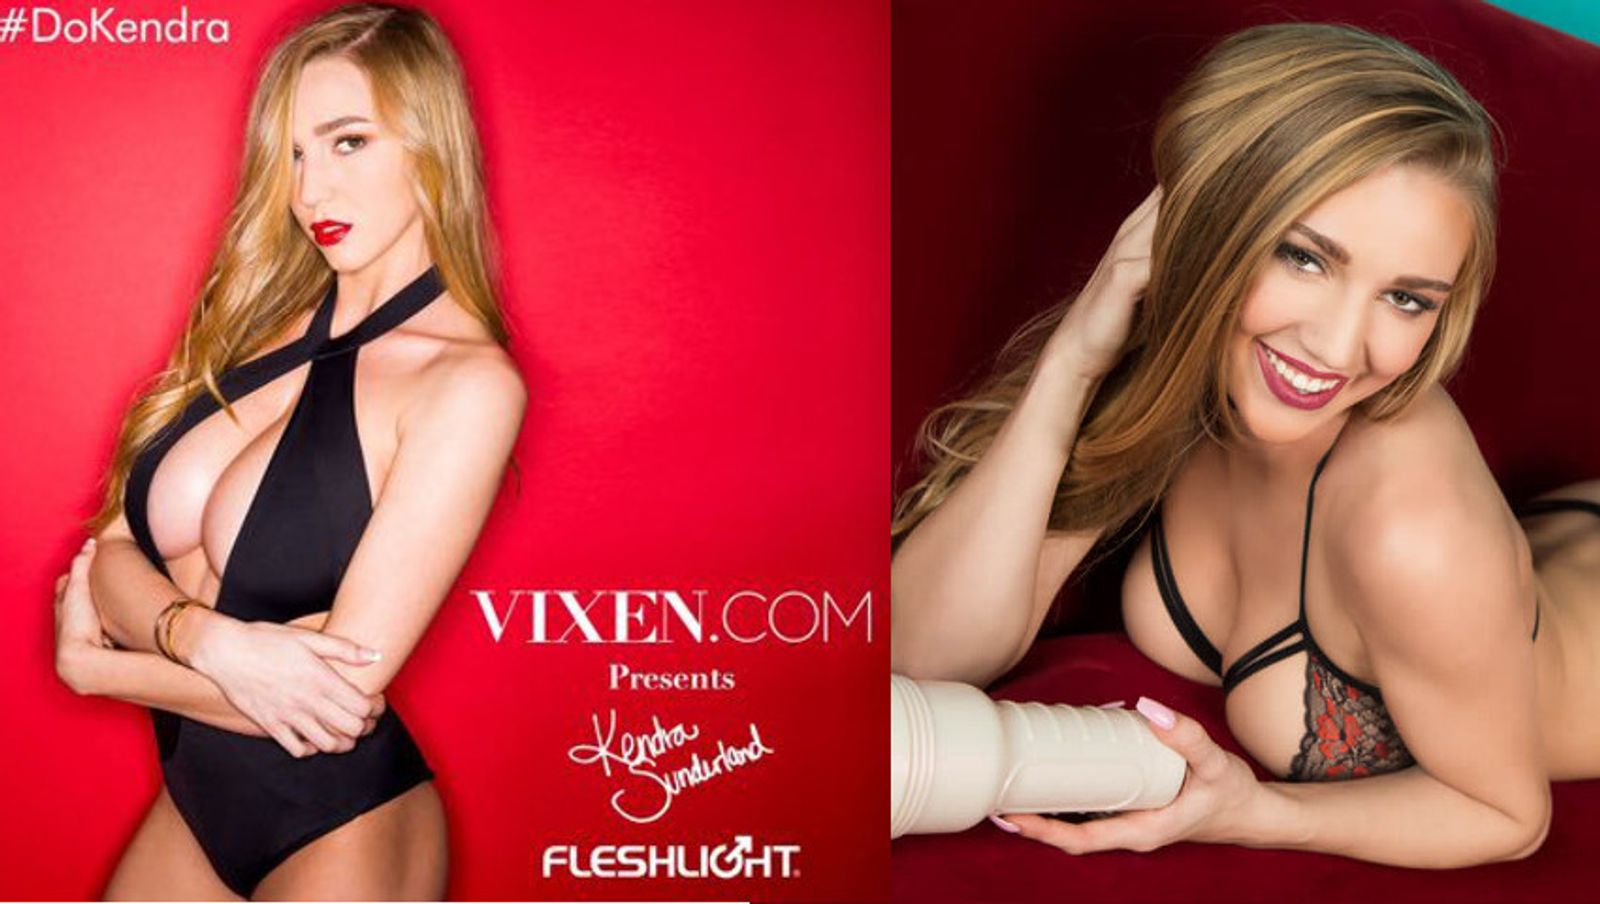 Kendra Sunderland Named Fleshlight Girl | AVN